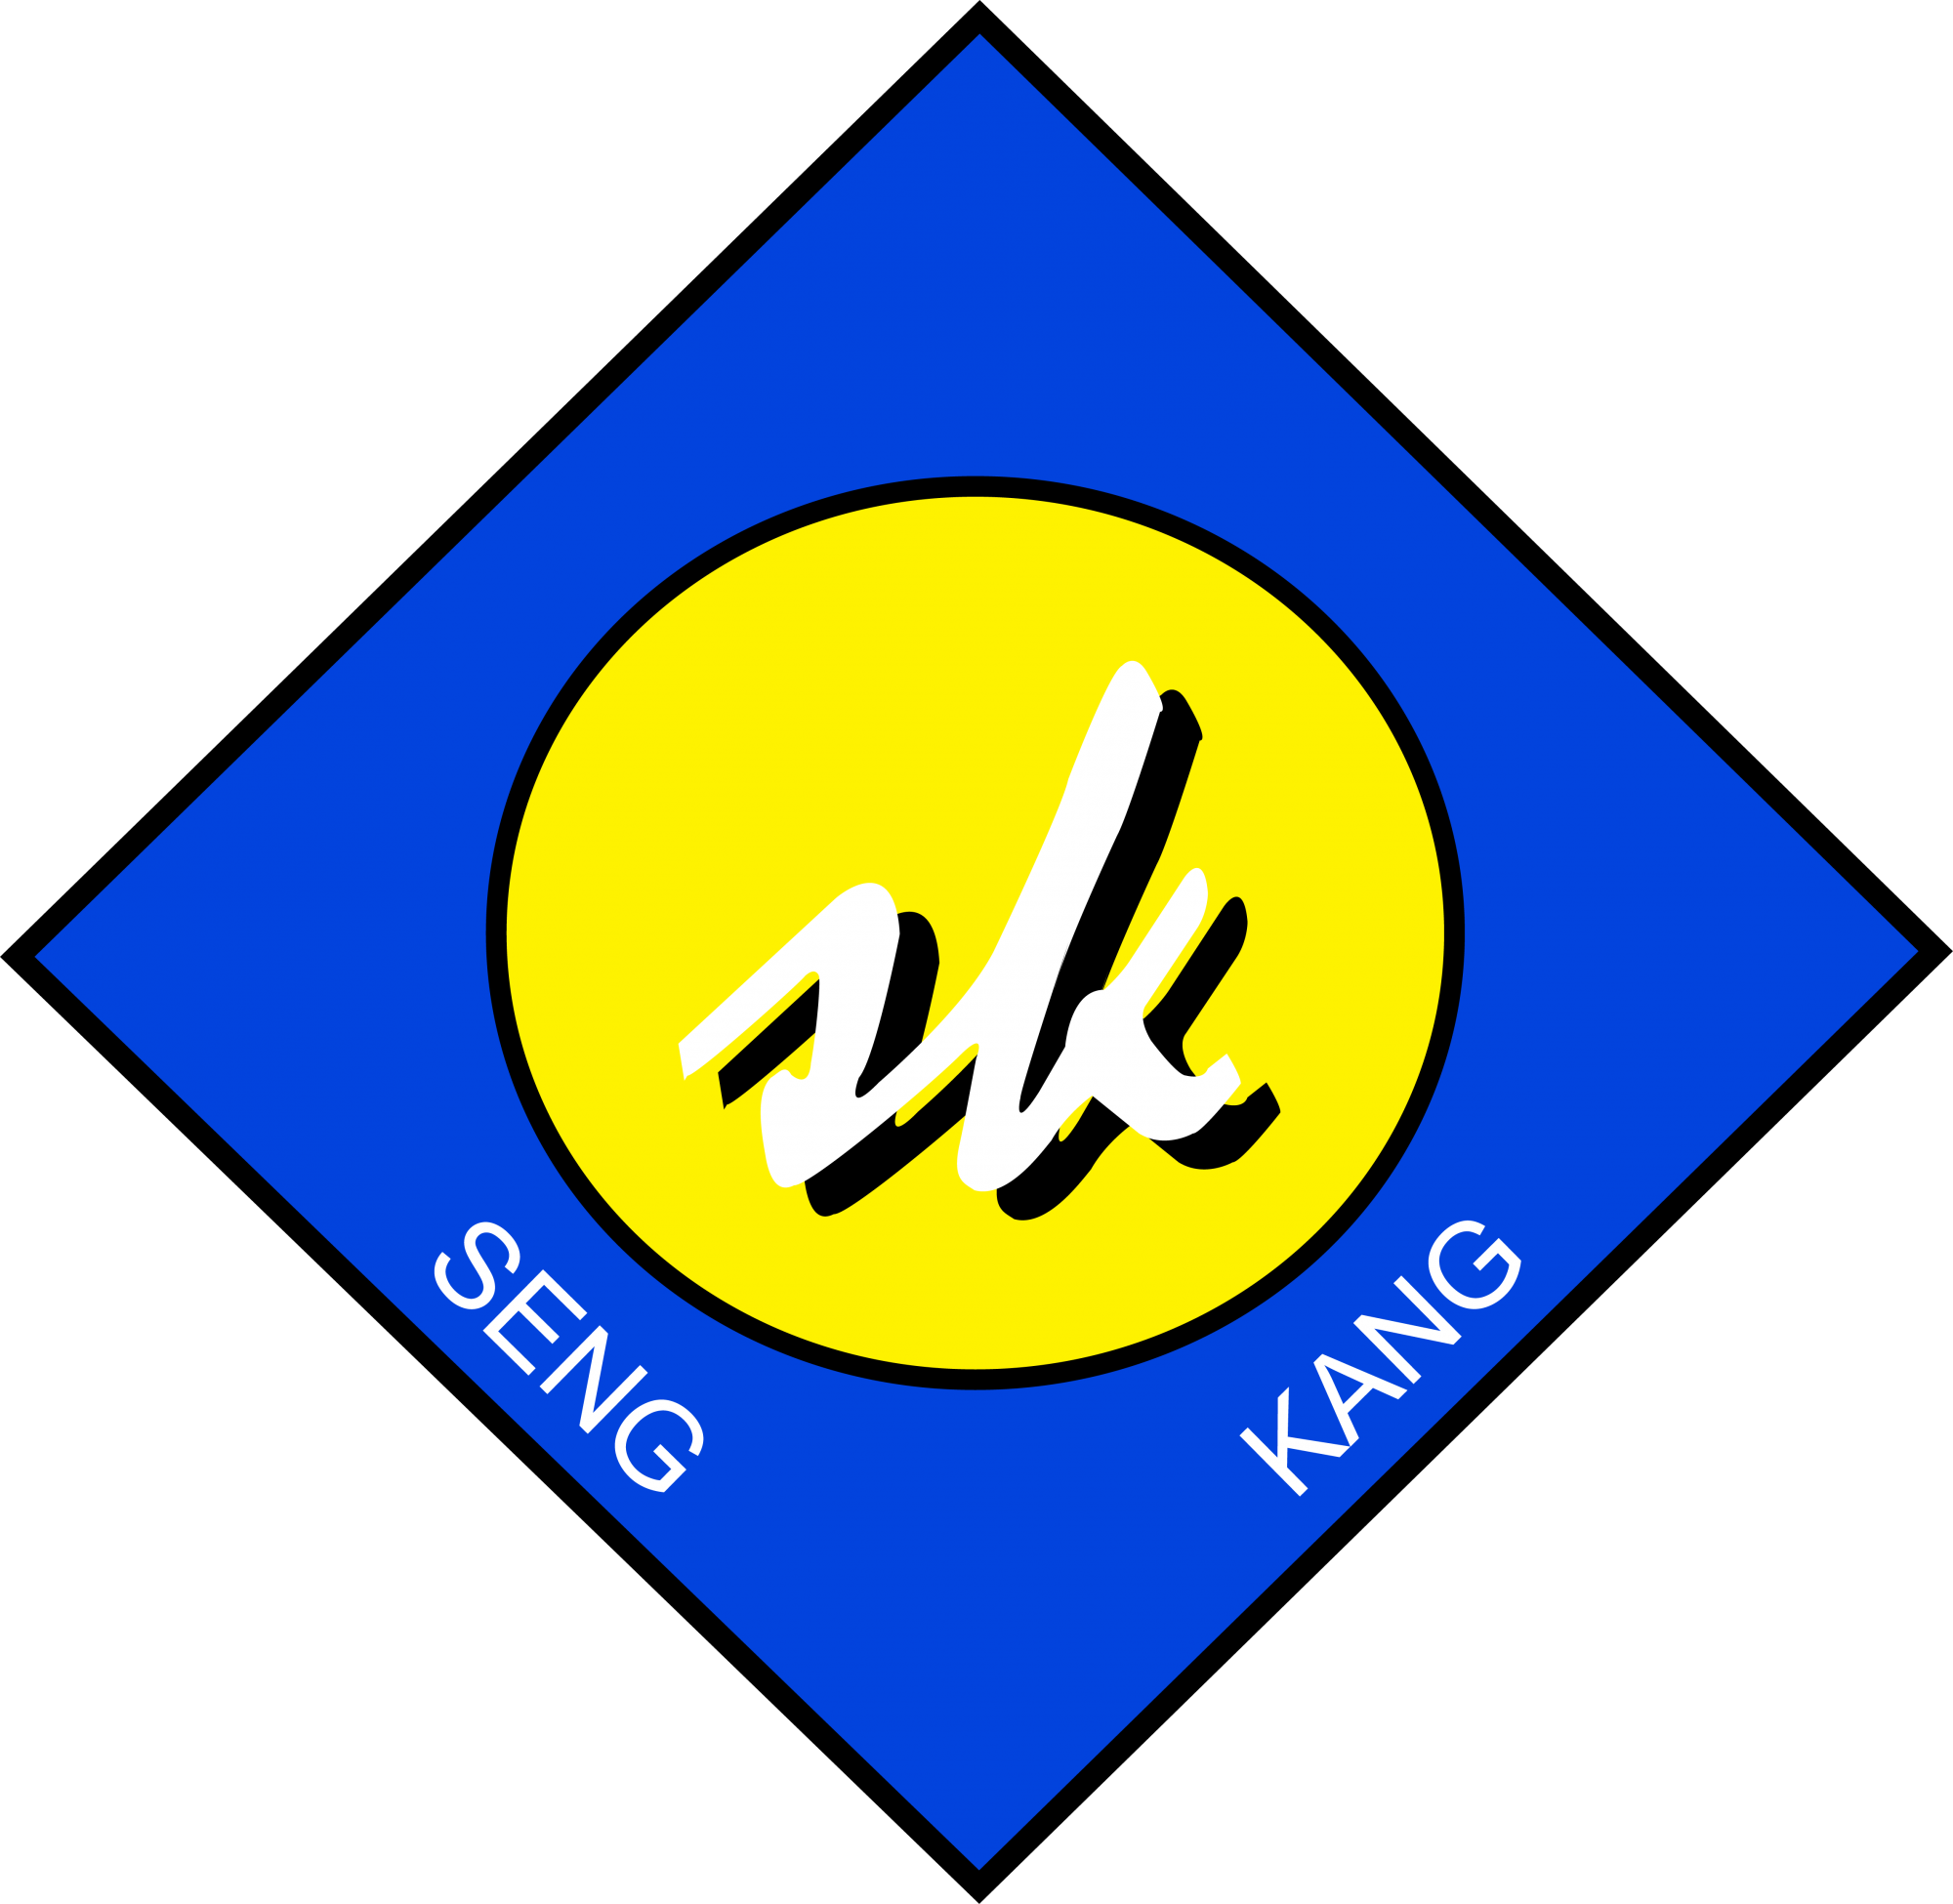 Logo of Seng Kang Primary School